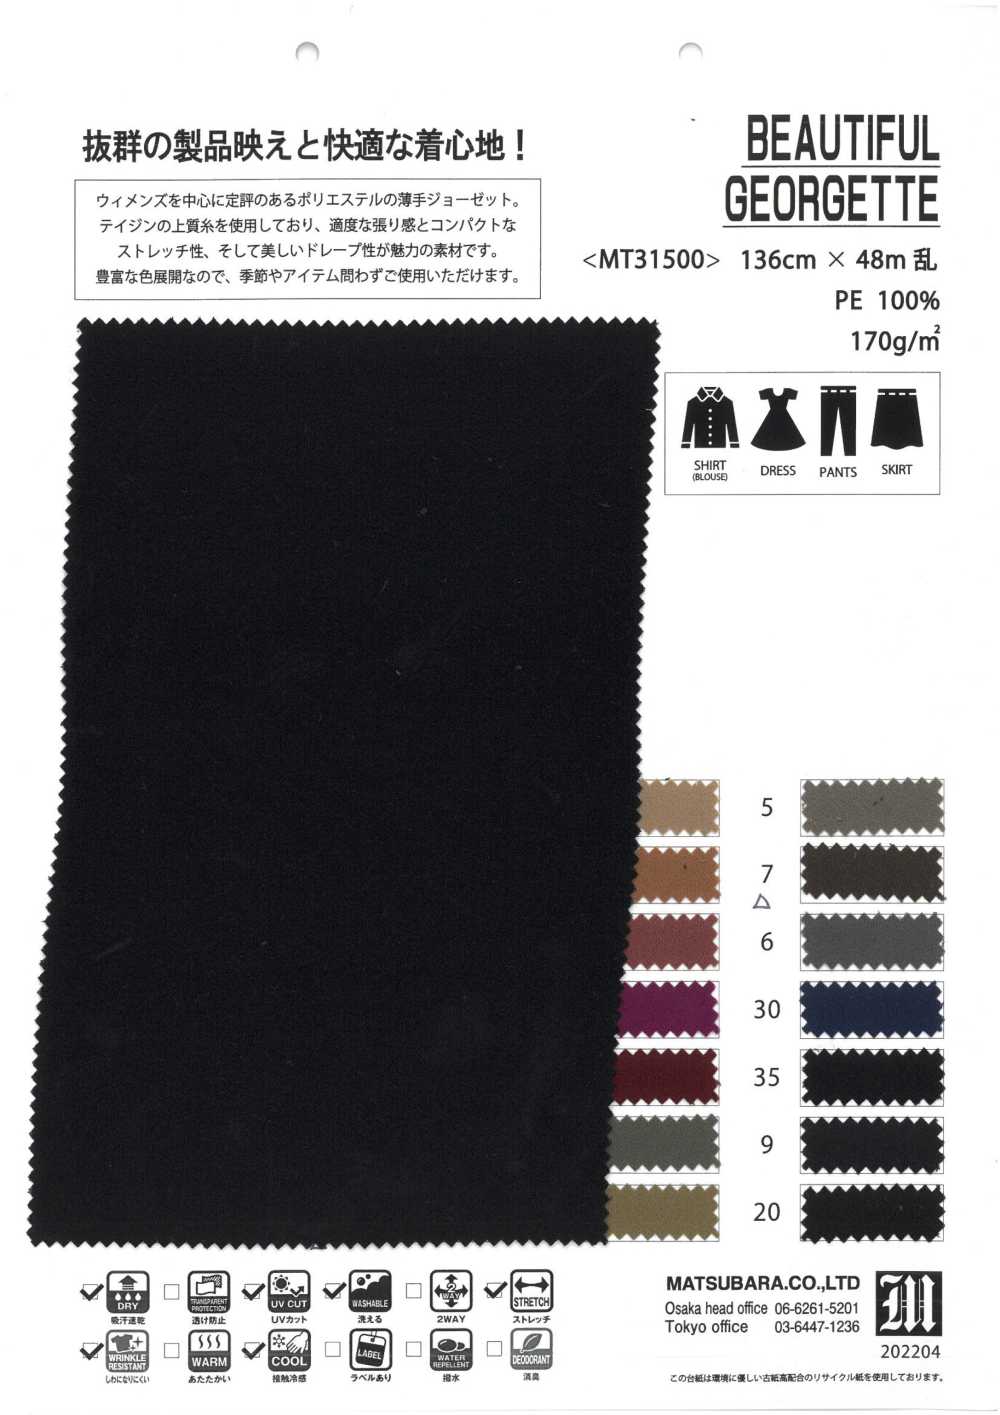 MT31500 SCHÖNE GEOGETTE[Textilgewebe] Matsubara